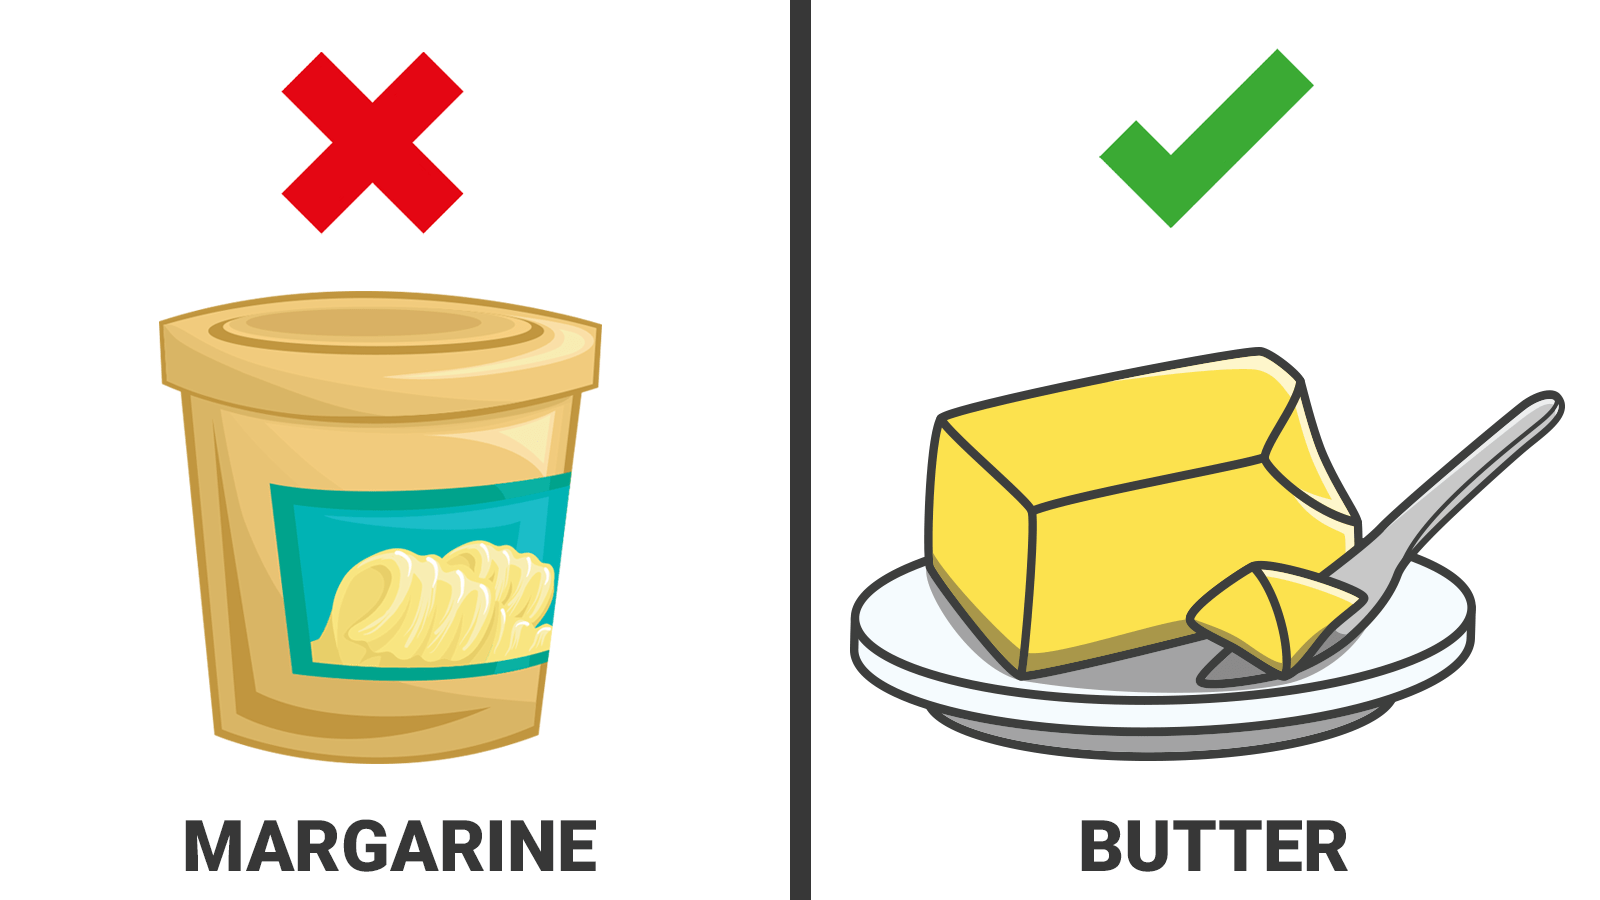 Заменить масло маргарином в выпечке